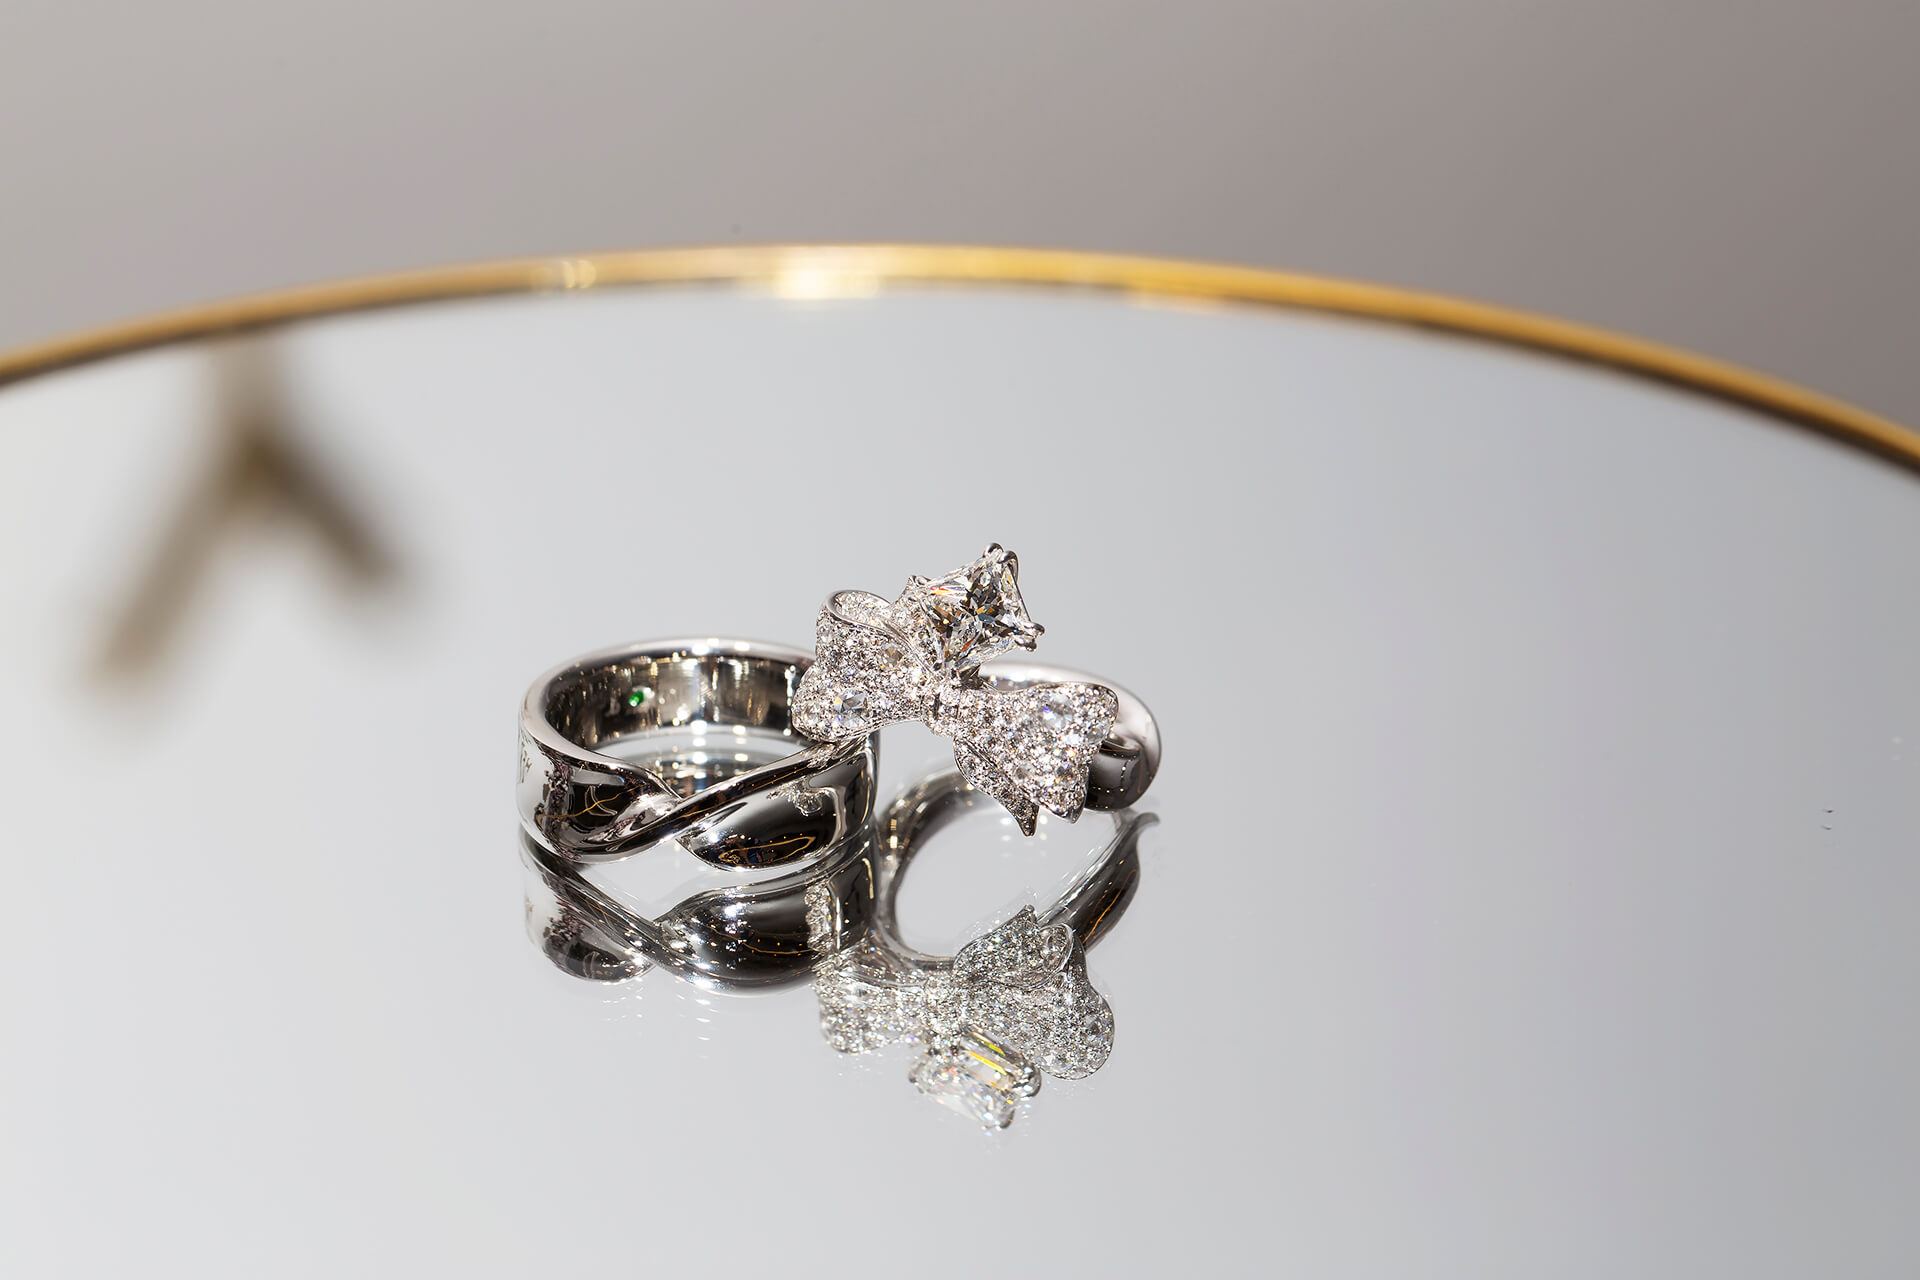 此珠寶設計以「彼此的禮物」為概念發想，以蝴蝶結和緞帶造型作為週年結婚對戒主軸